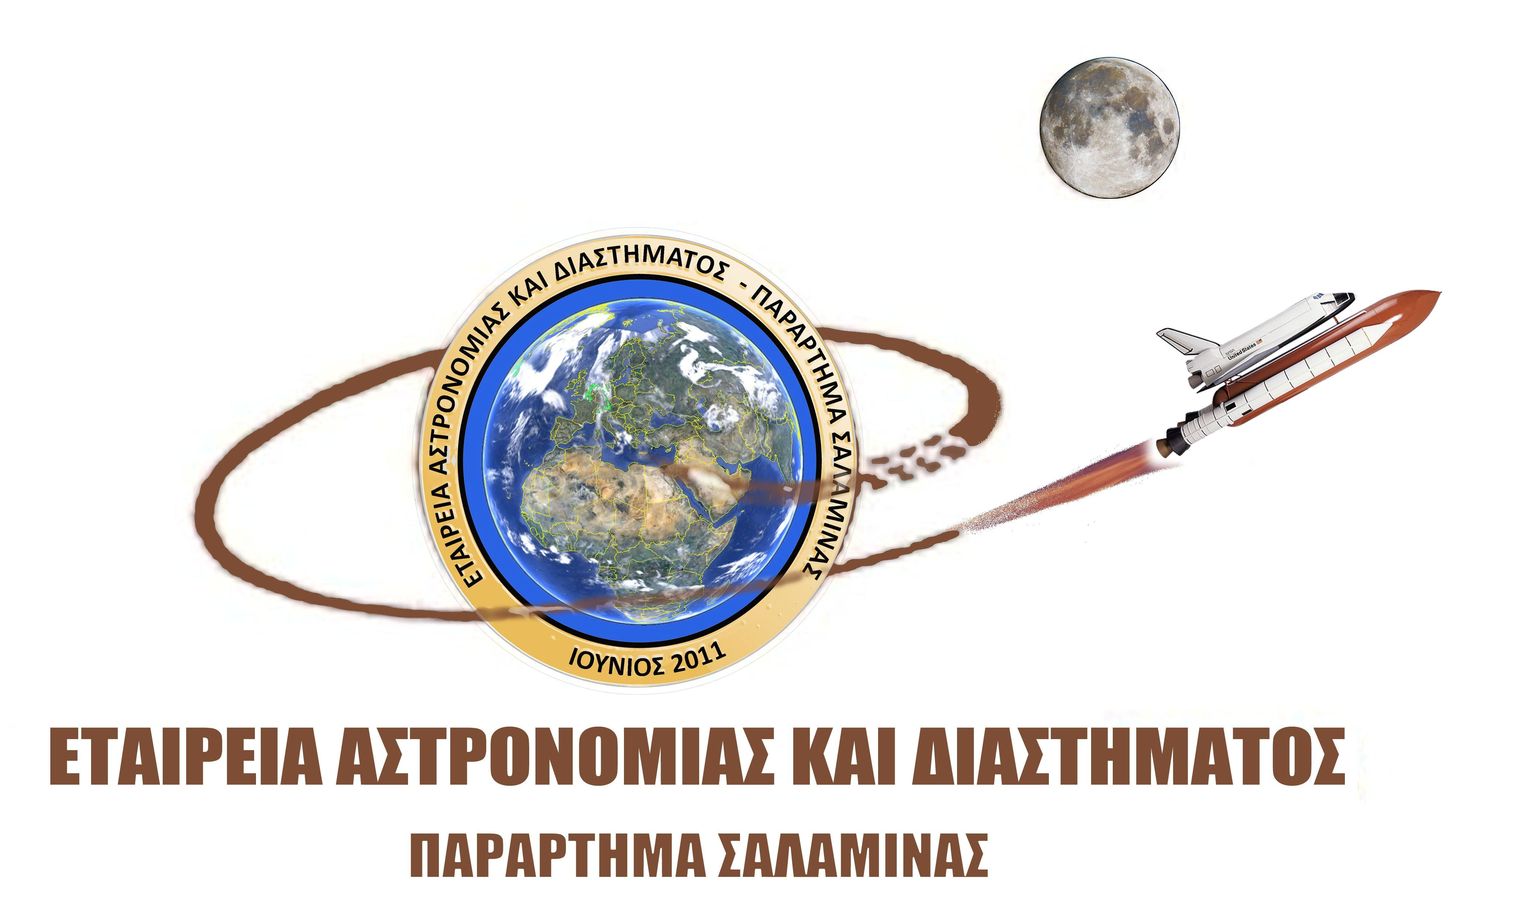 Δέκα χρόνια από την σύσταση του Παραρτήματος Σαλαμίνας της Εταιρείας Αστρονομίας & Διαστήματος